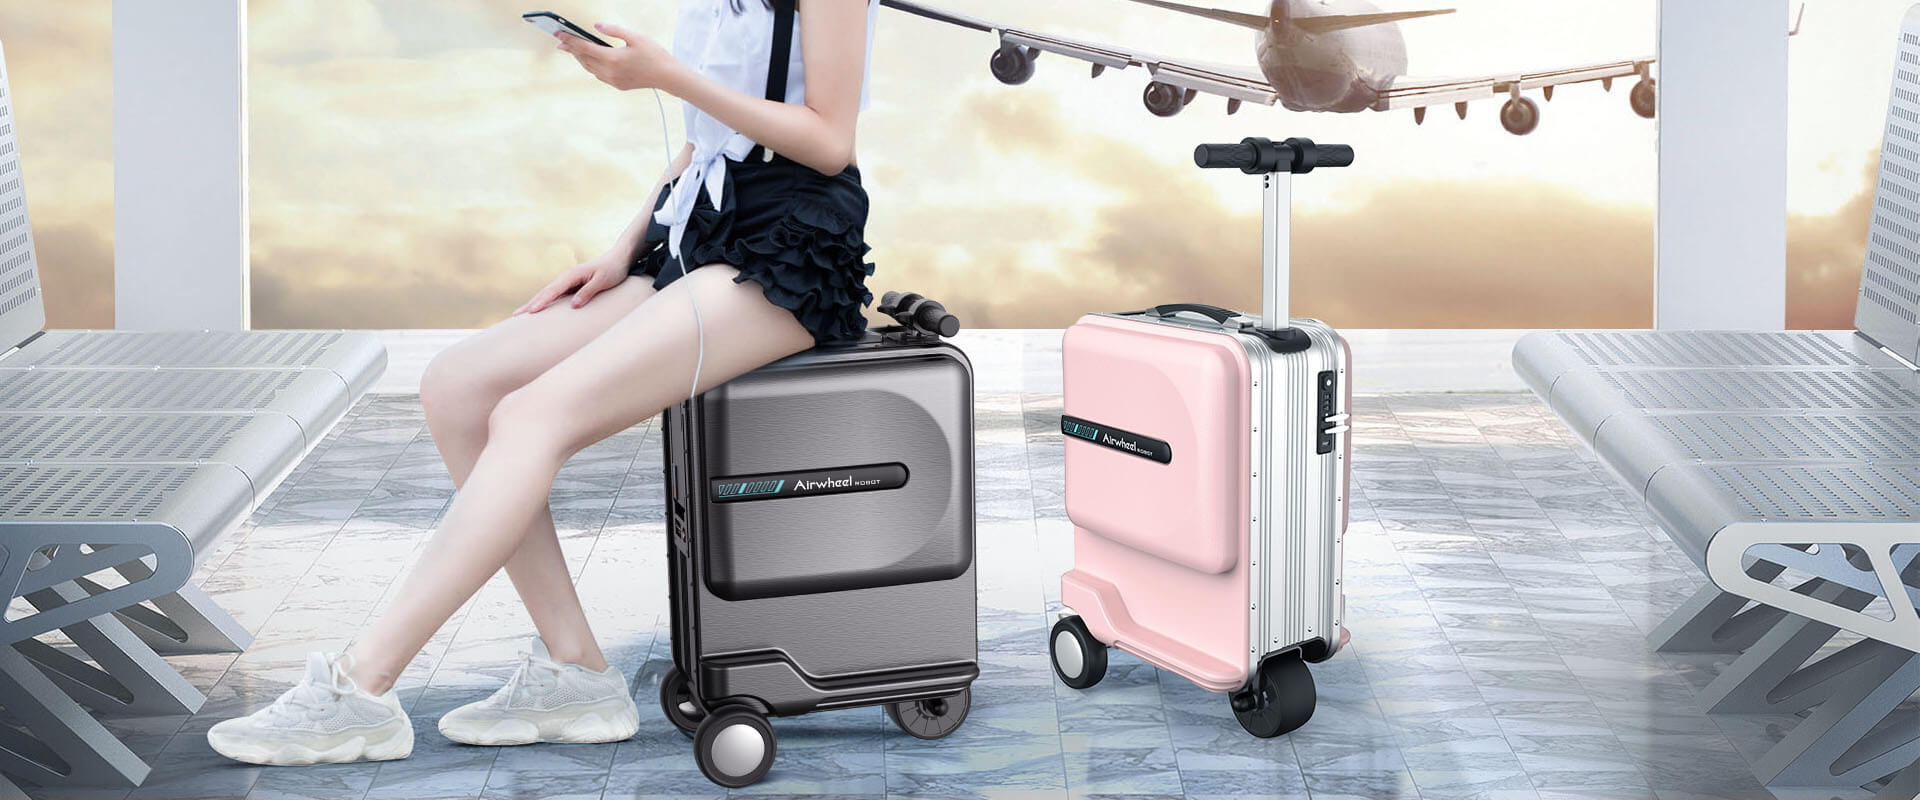 airwheel se3mini valise intelligente